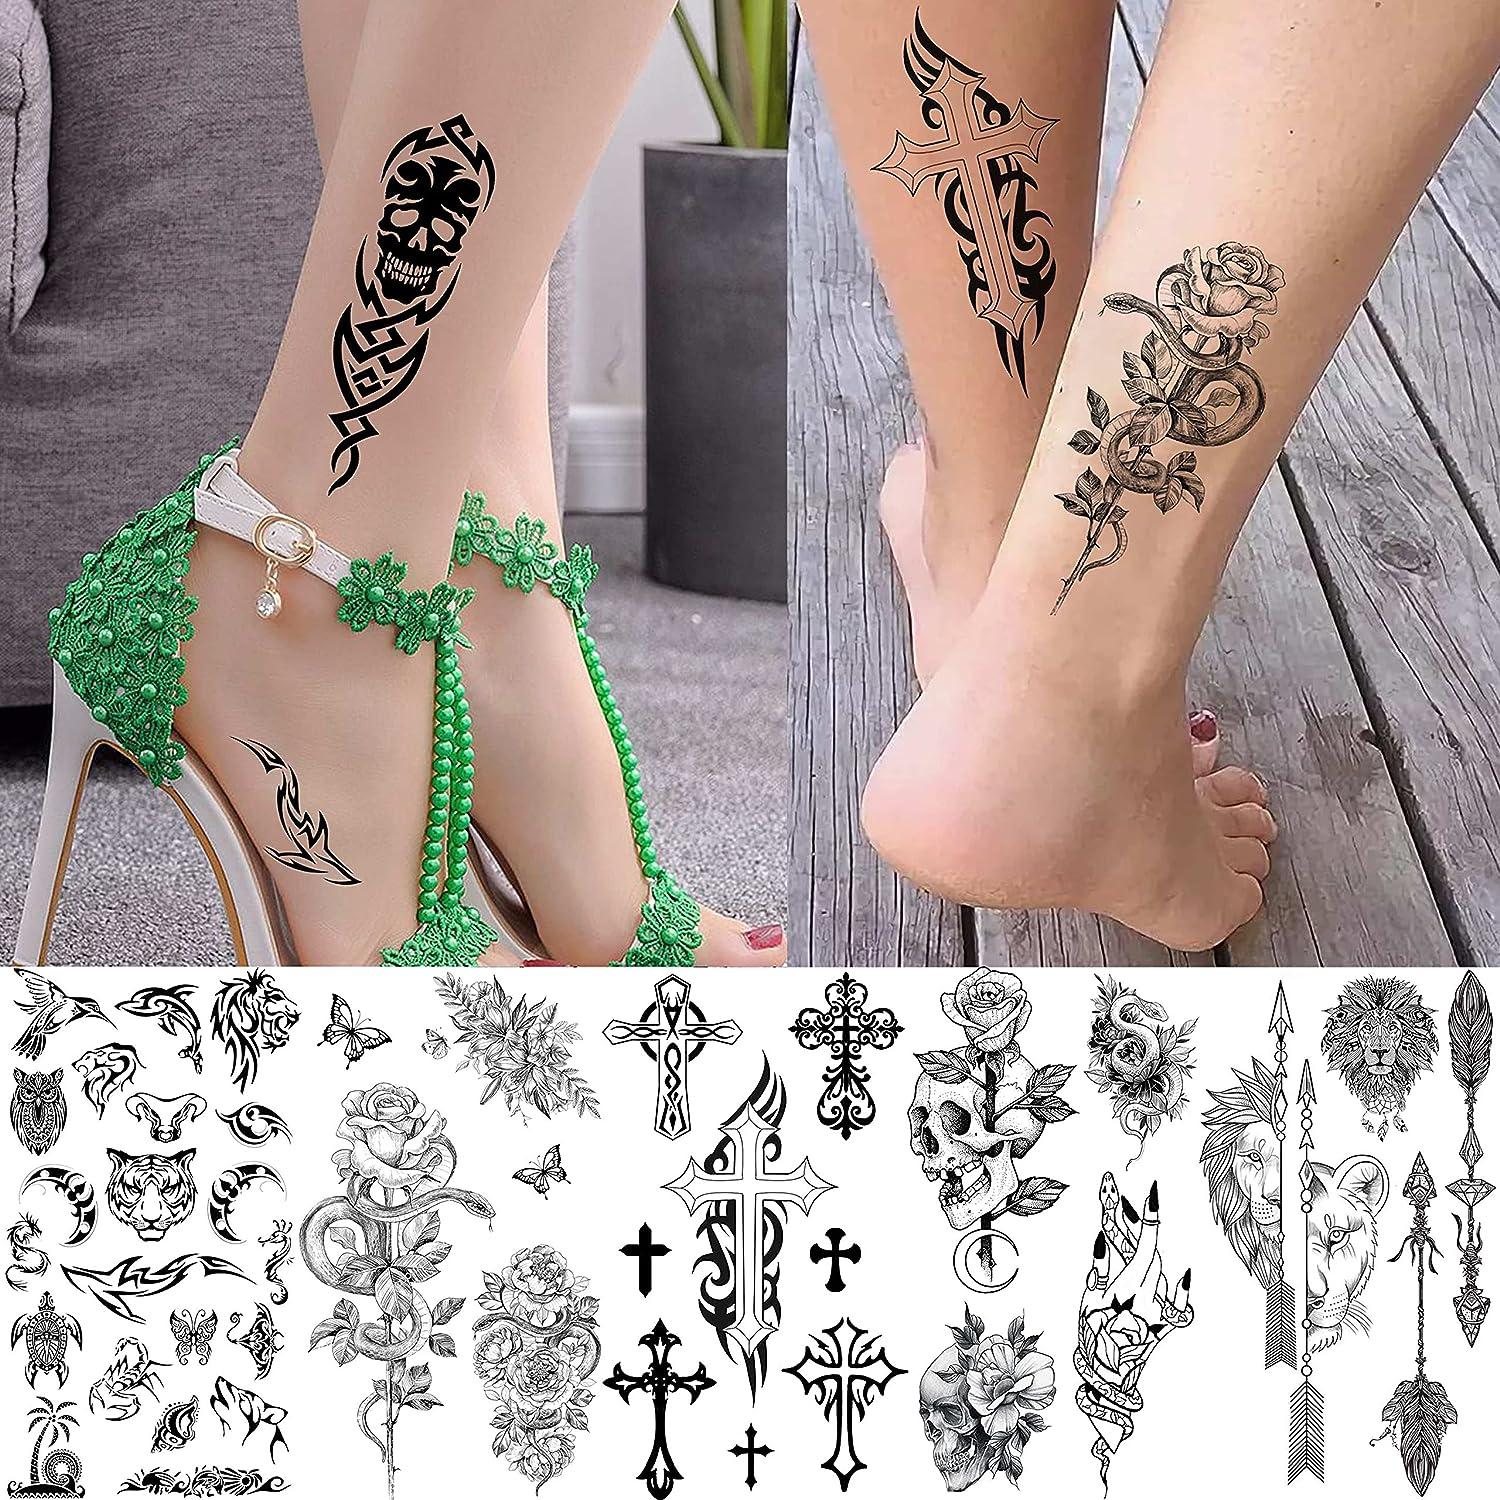 Crown tattoo on foot | Foot tattoos, Tattoos, Crown tattoo